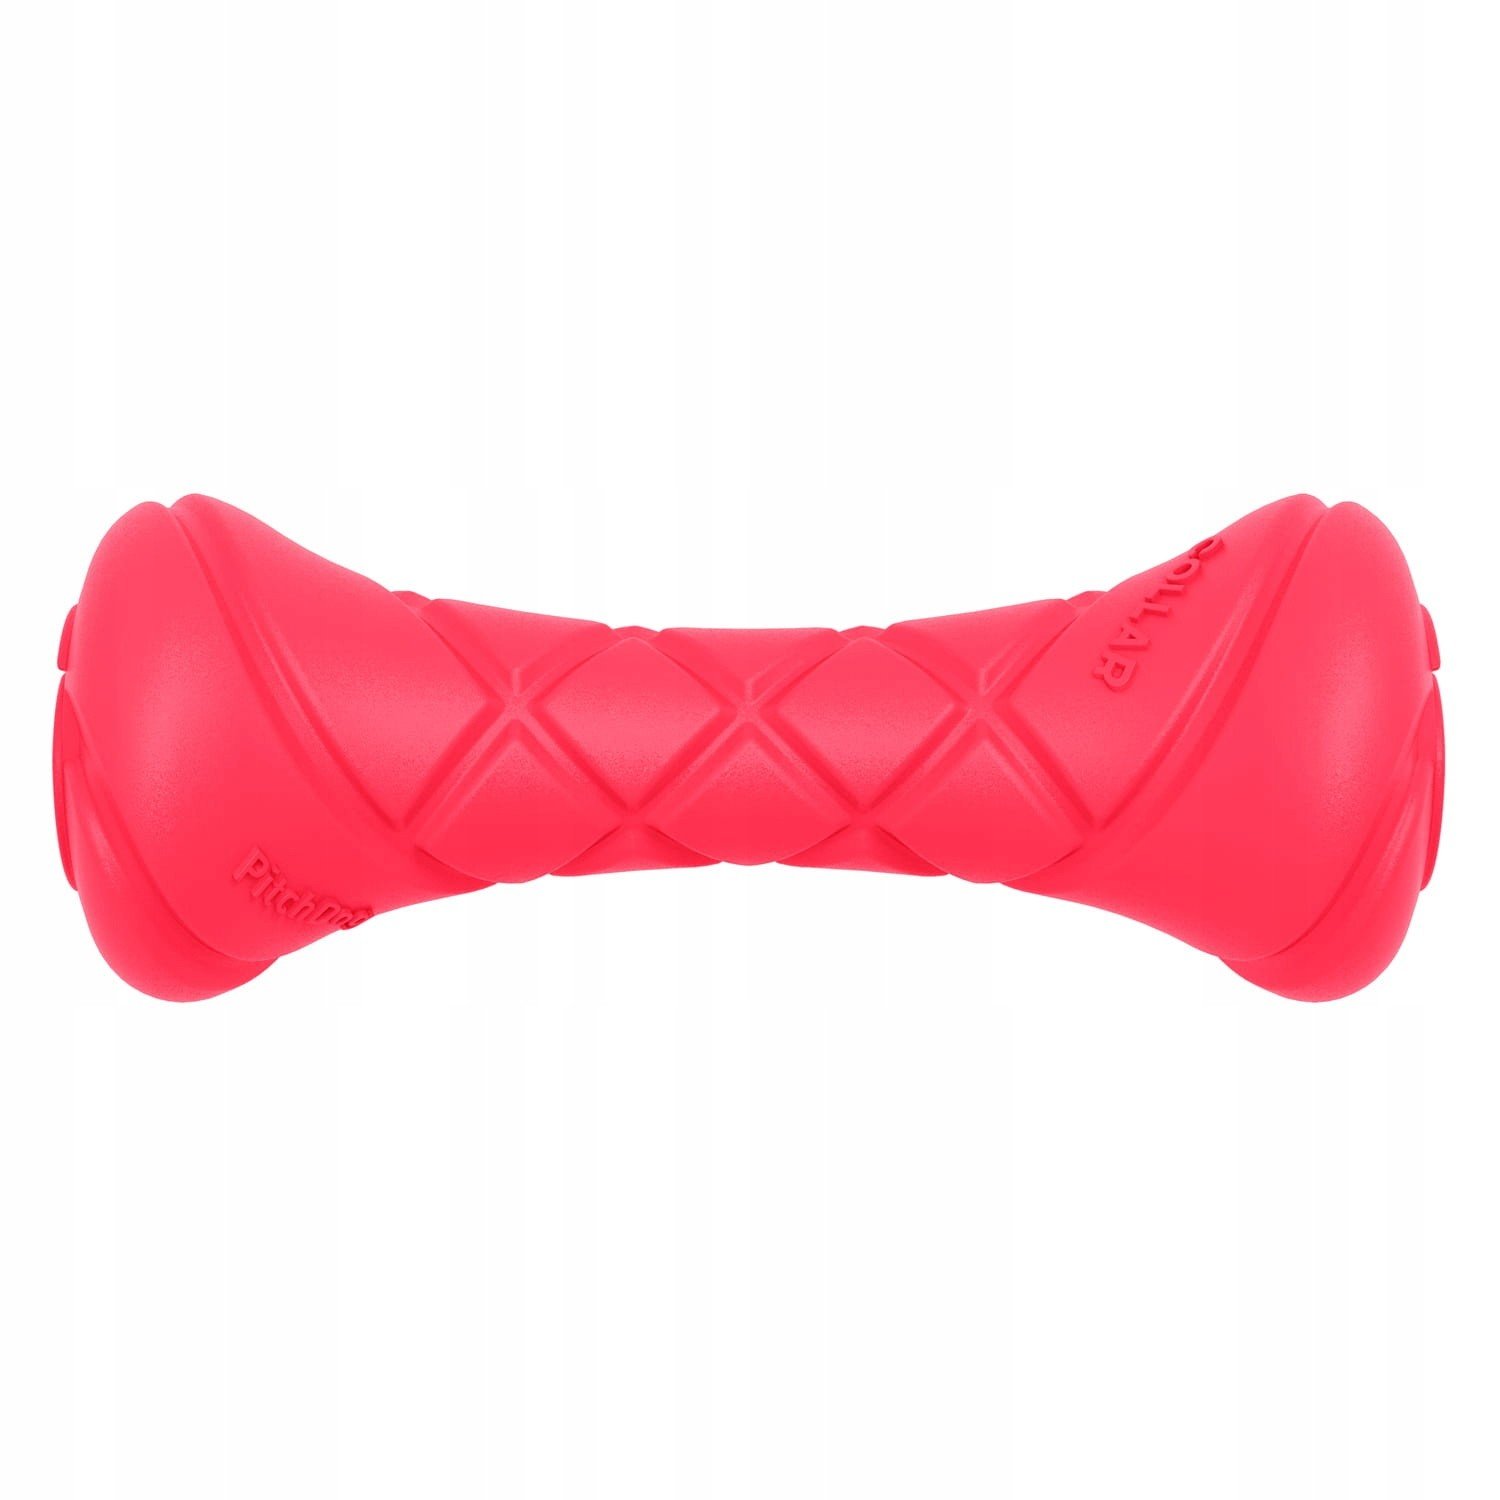 PitchDog hrací činka, 19x7 cm, růžová